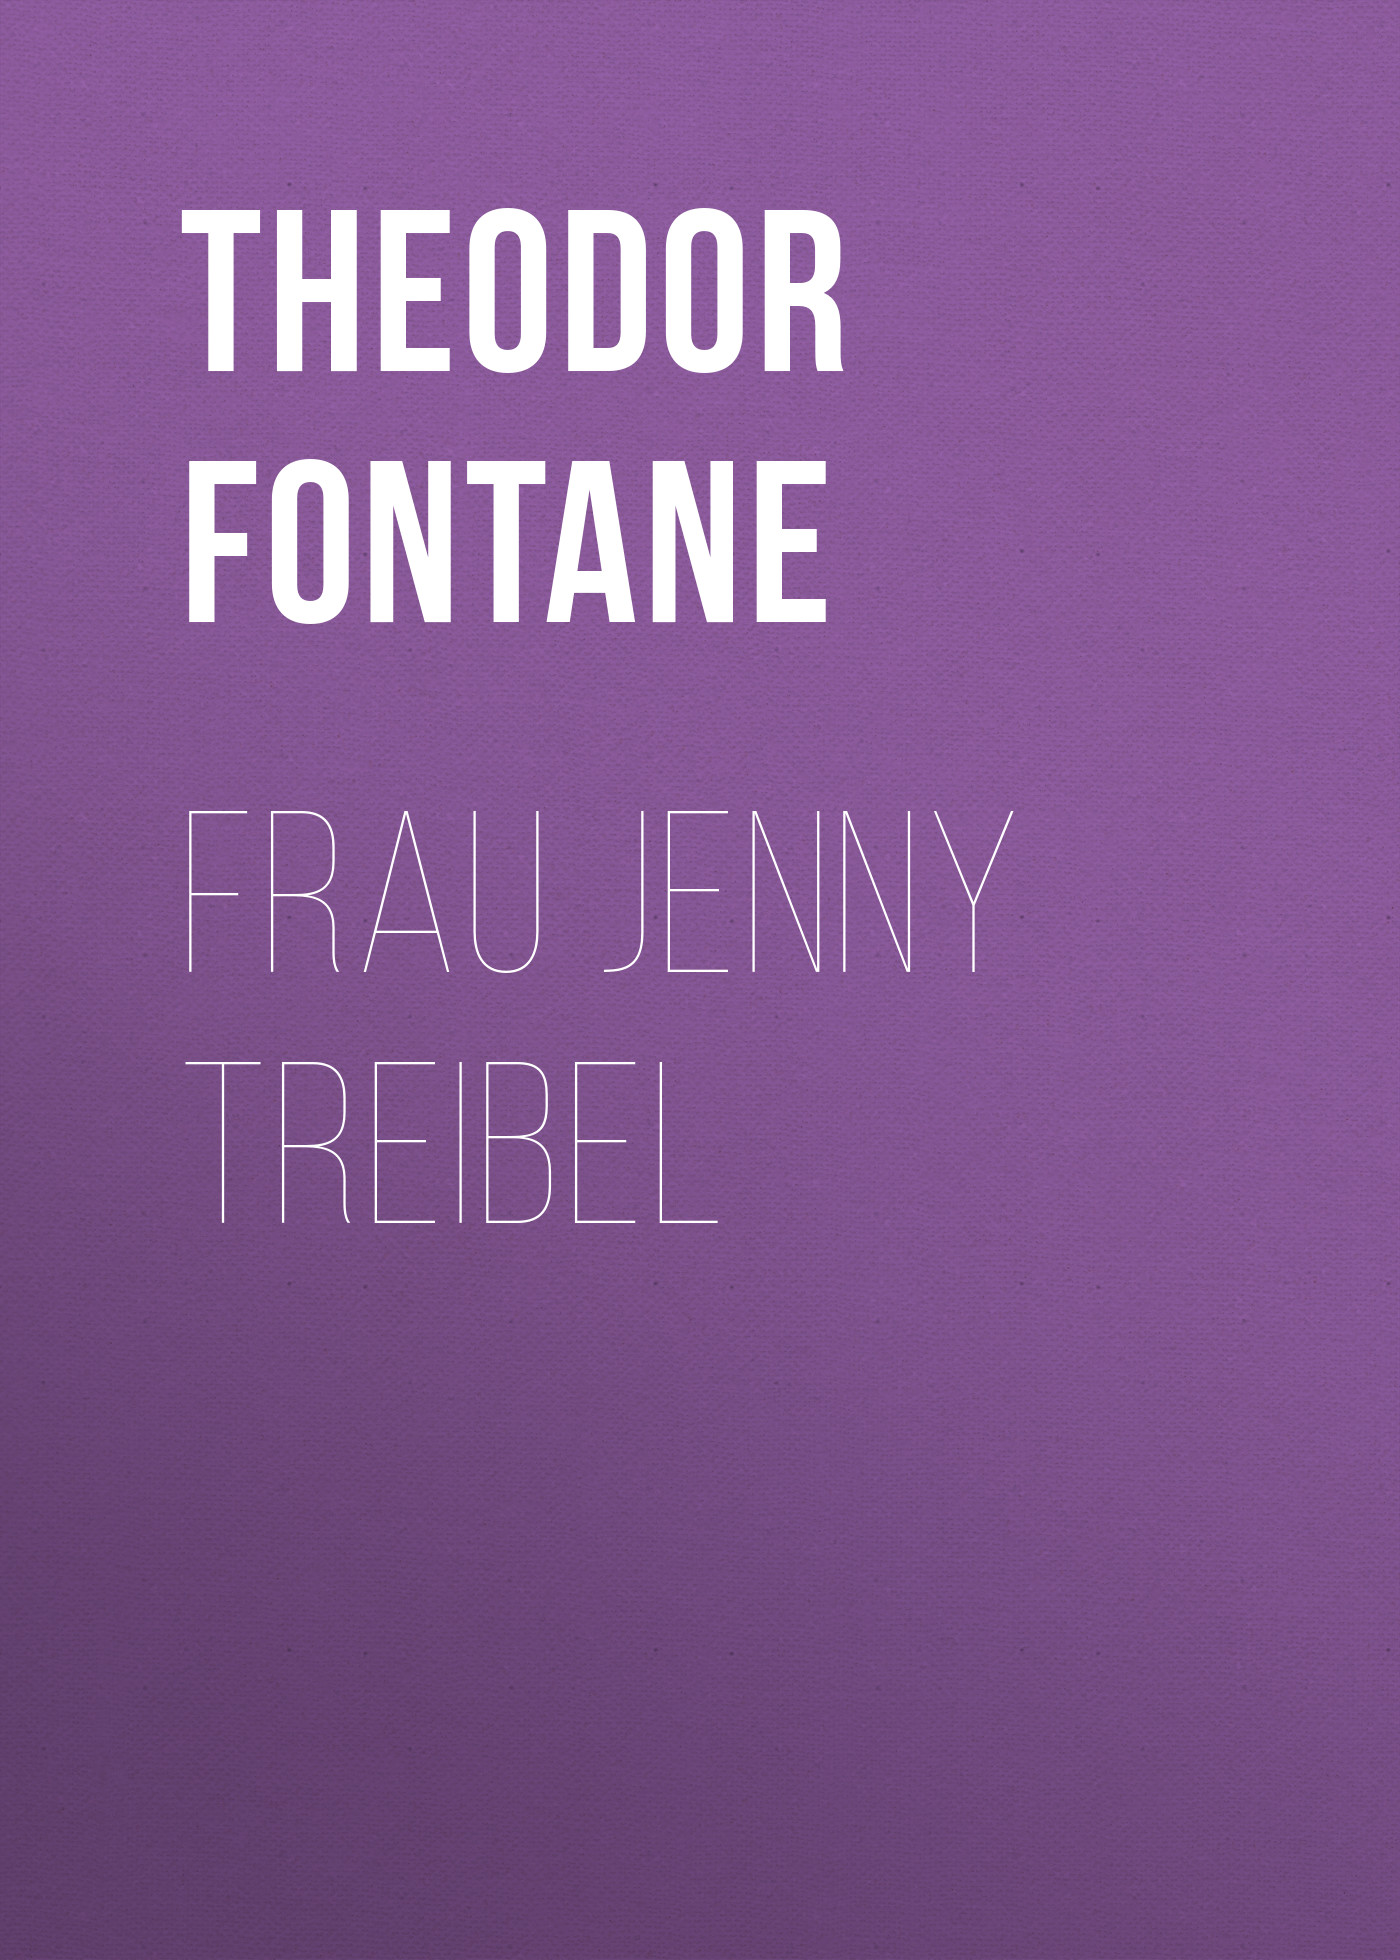 Книга Frau Jenny Treibel из серии , созданная Theodor Fontane, может относится к жанру Зарубежная старинная литература, Зарубежная классика. Стоимость электронной книги Frau Jenny Treibel с идентификатором 24727785 составляет 0 руб.